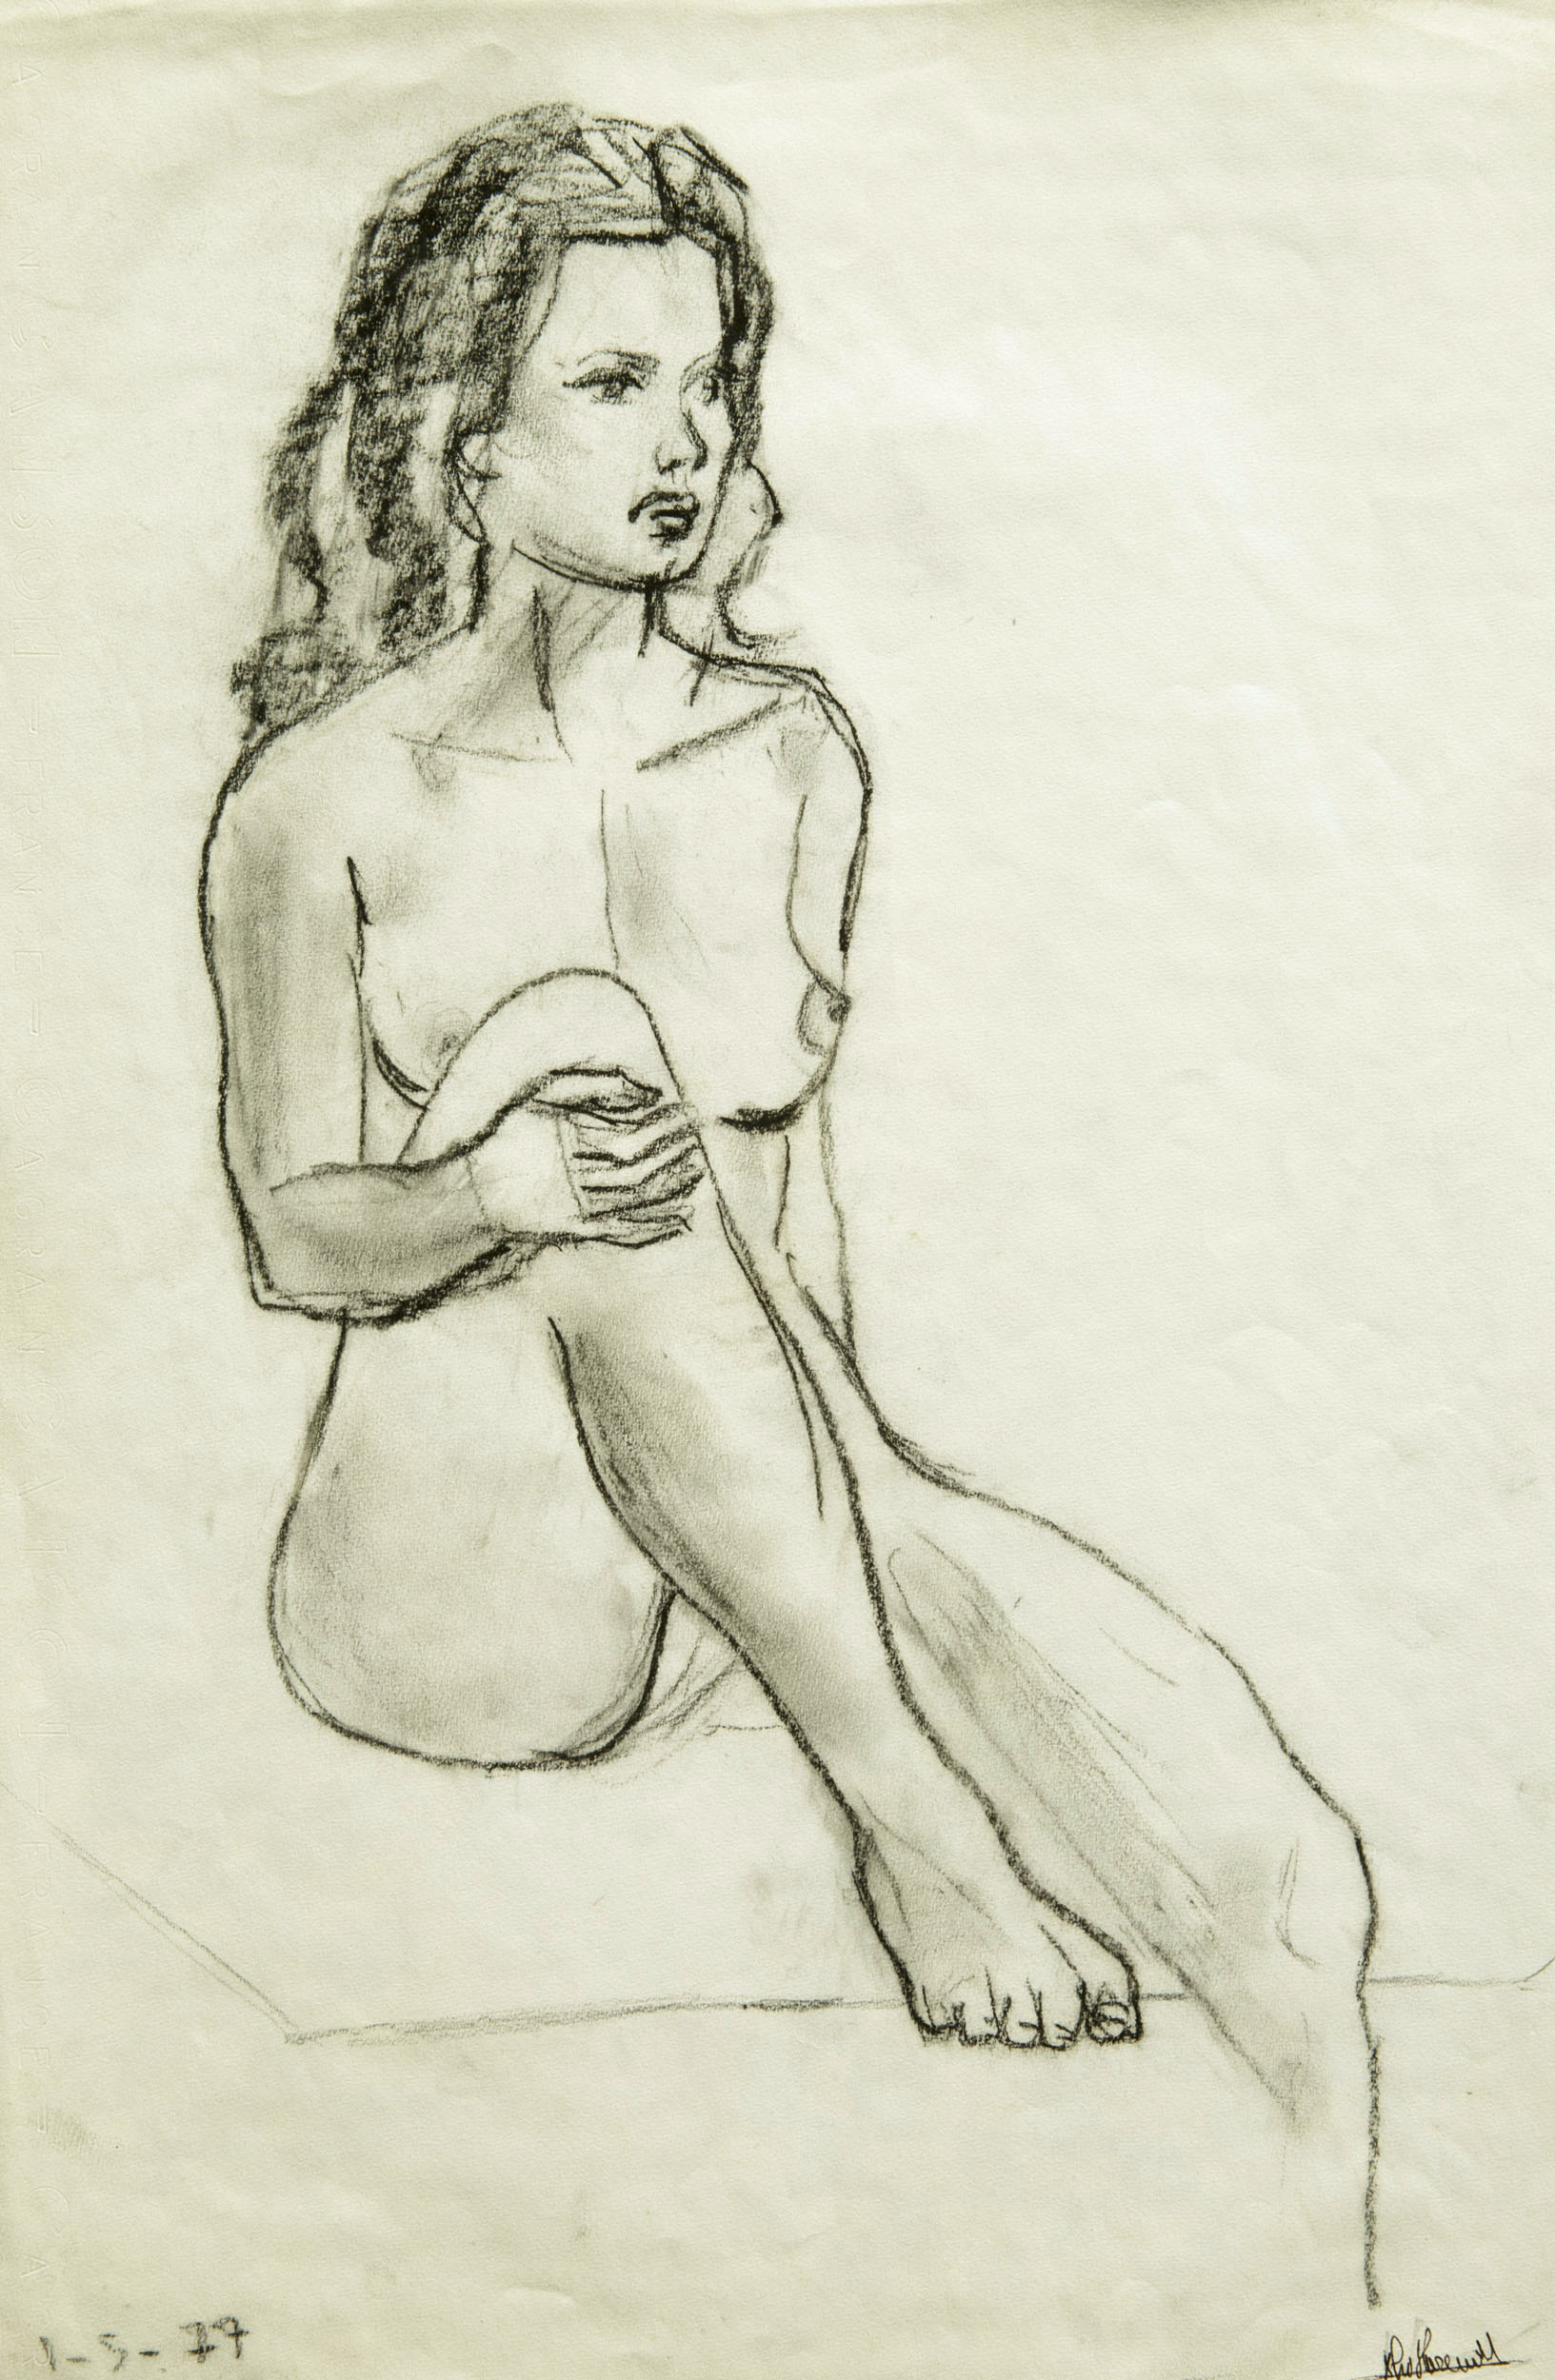 Nu artistique au fusain sur papier Canson réalisé lors de cours de modèle vivant, Paris 1977, j'ai 13 ans.